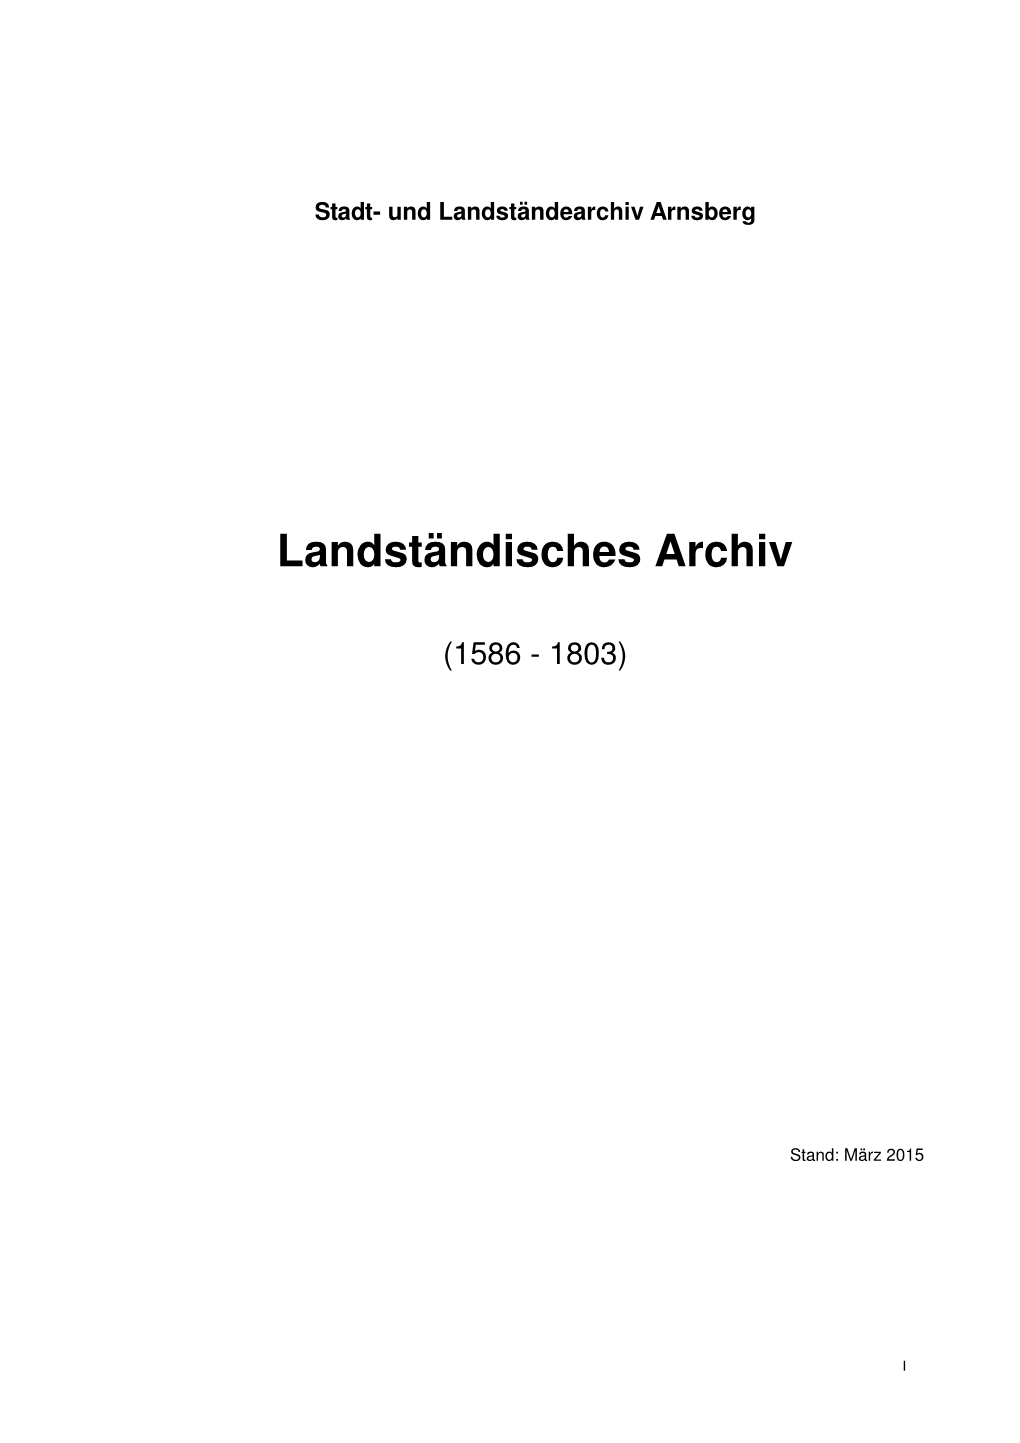 Landständisches Archiv